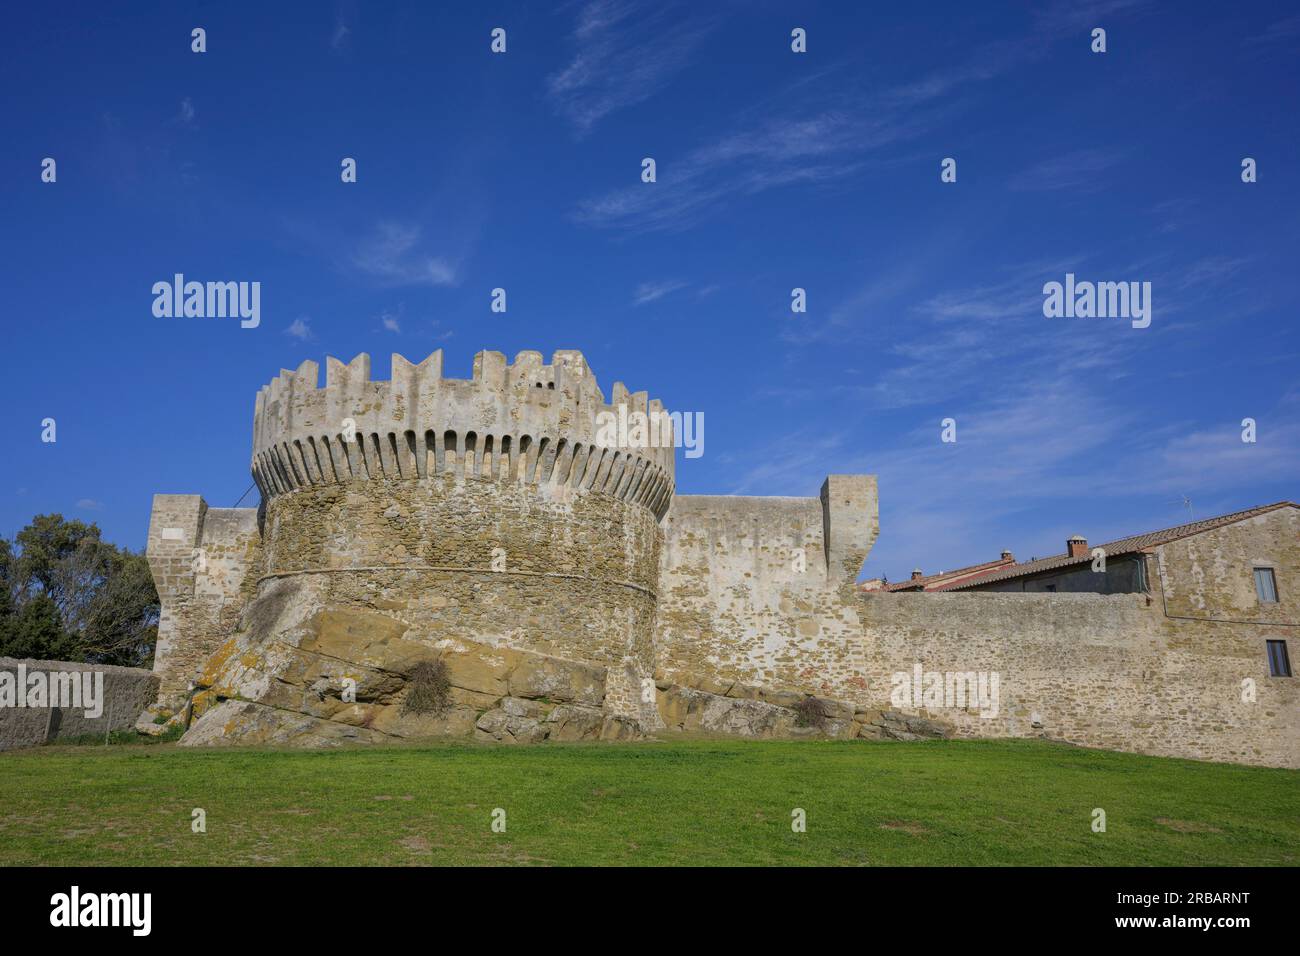 Veduta delle mura difensive della fortezza di Populonia, Piombino, provincia di Livorno, Italia Foto Stock